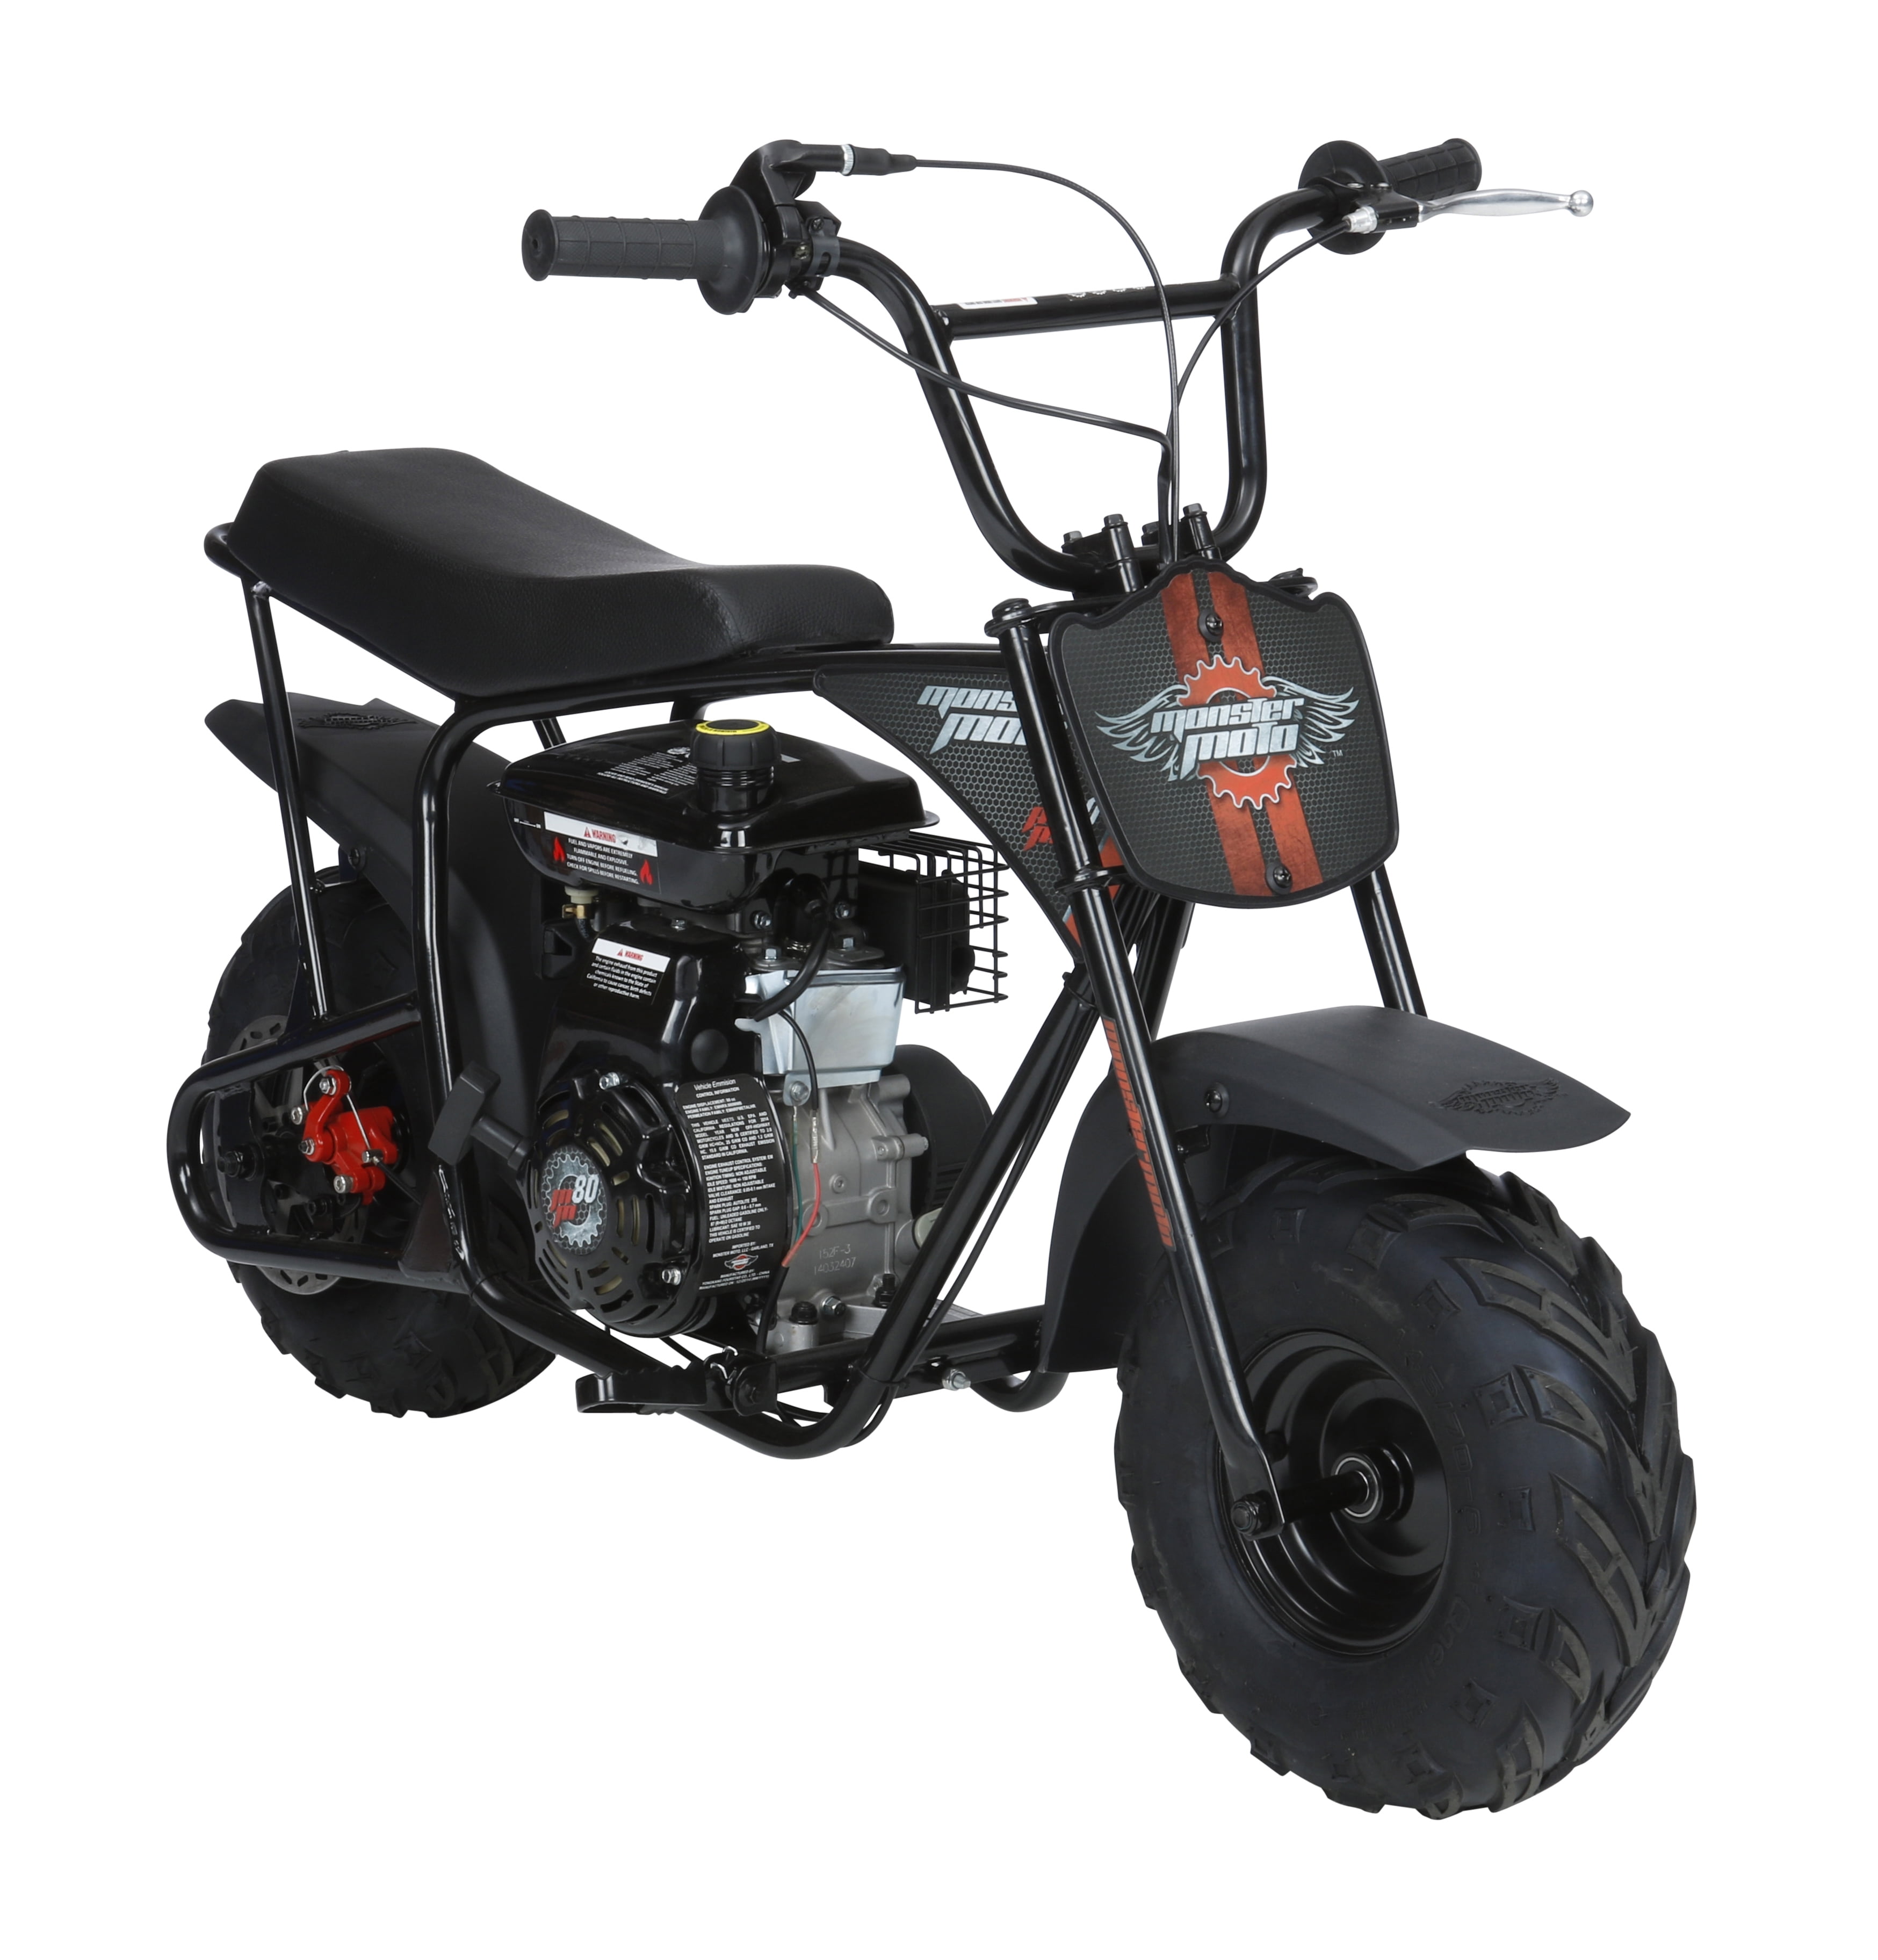 Mini moto Bastos - Motos